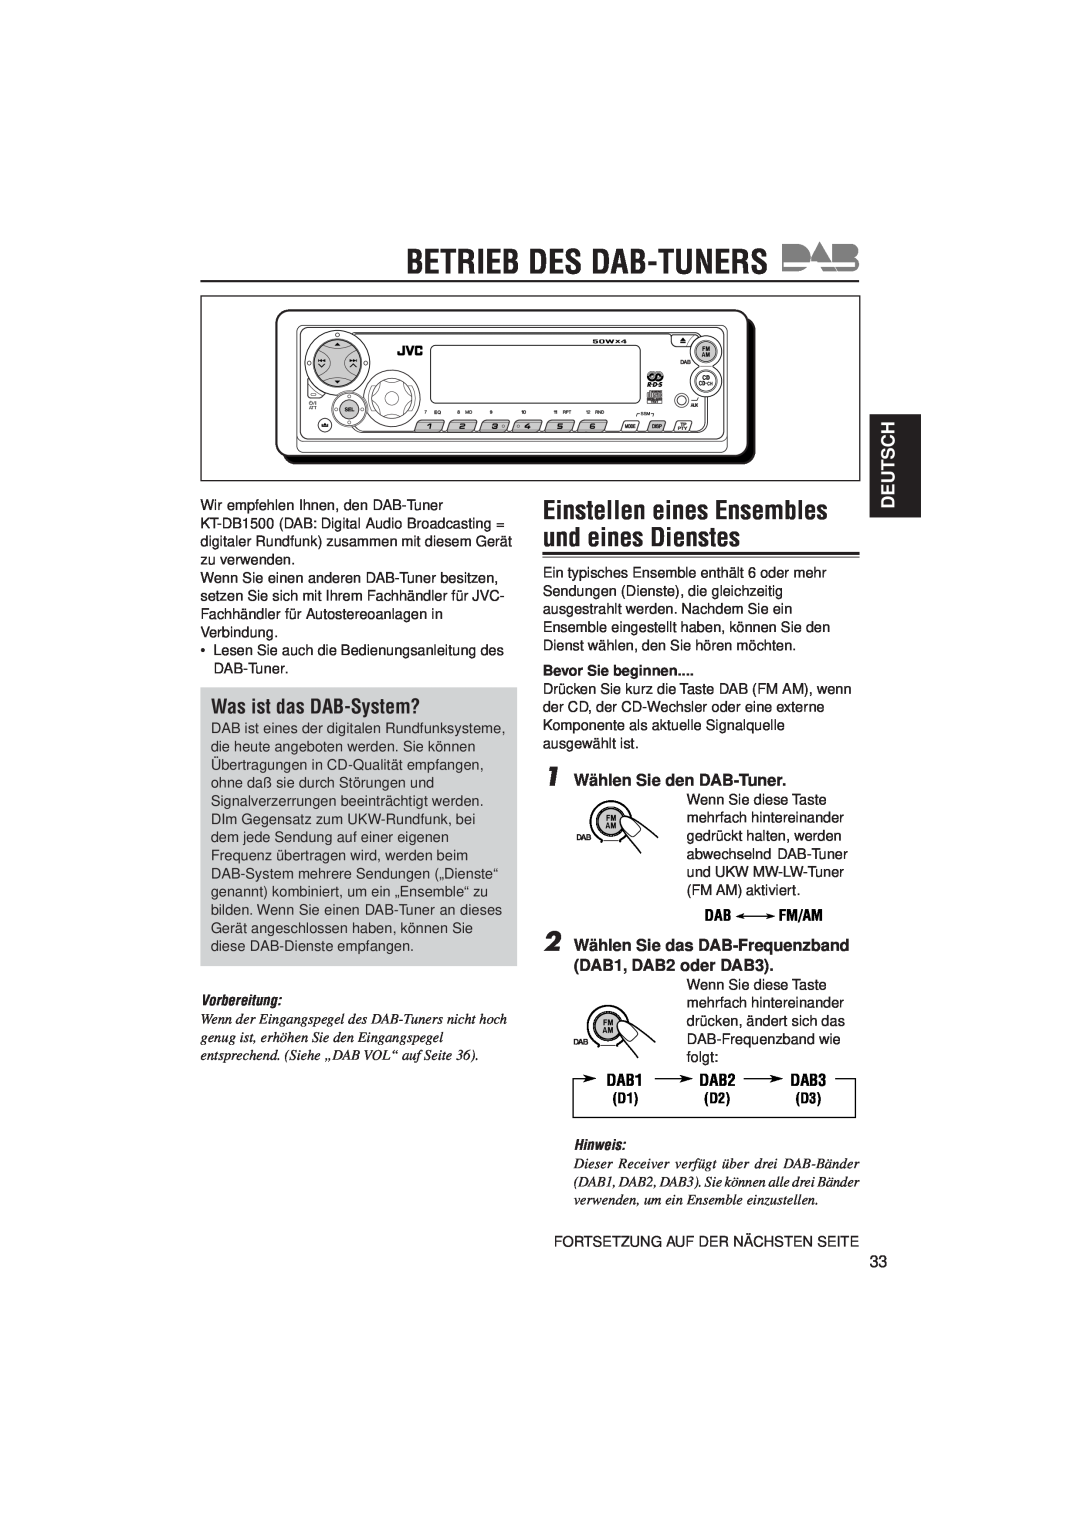 JVC KD-SX992R Betrieb Des Dab-Tuners, Einstellen eines Ensembles und eines Dienstes, Was ist das DAB-System?, Deutsch 